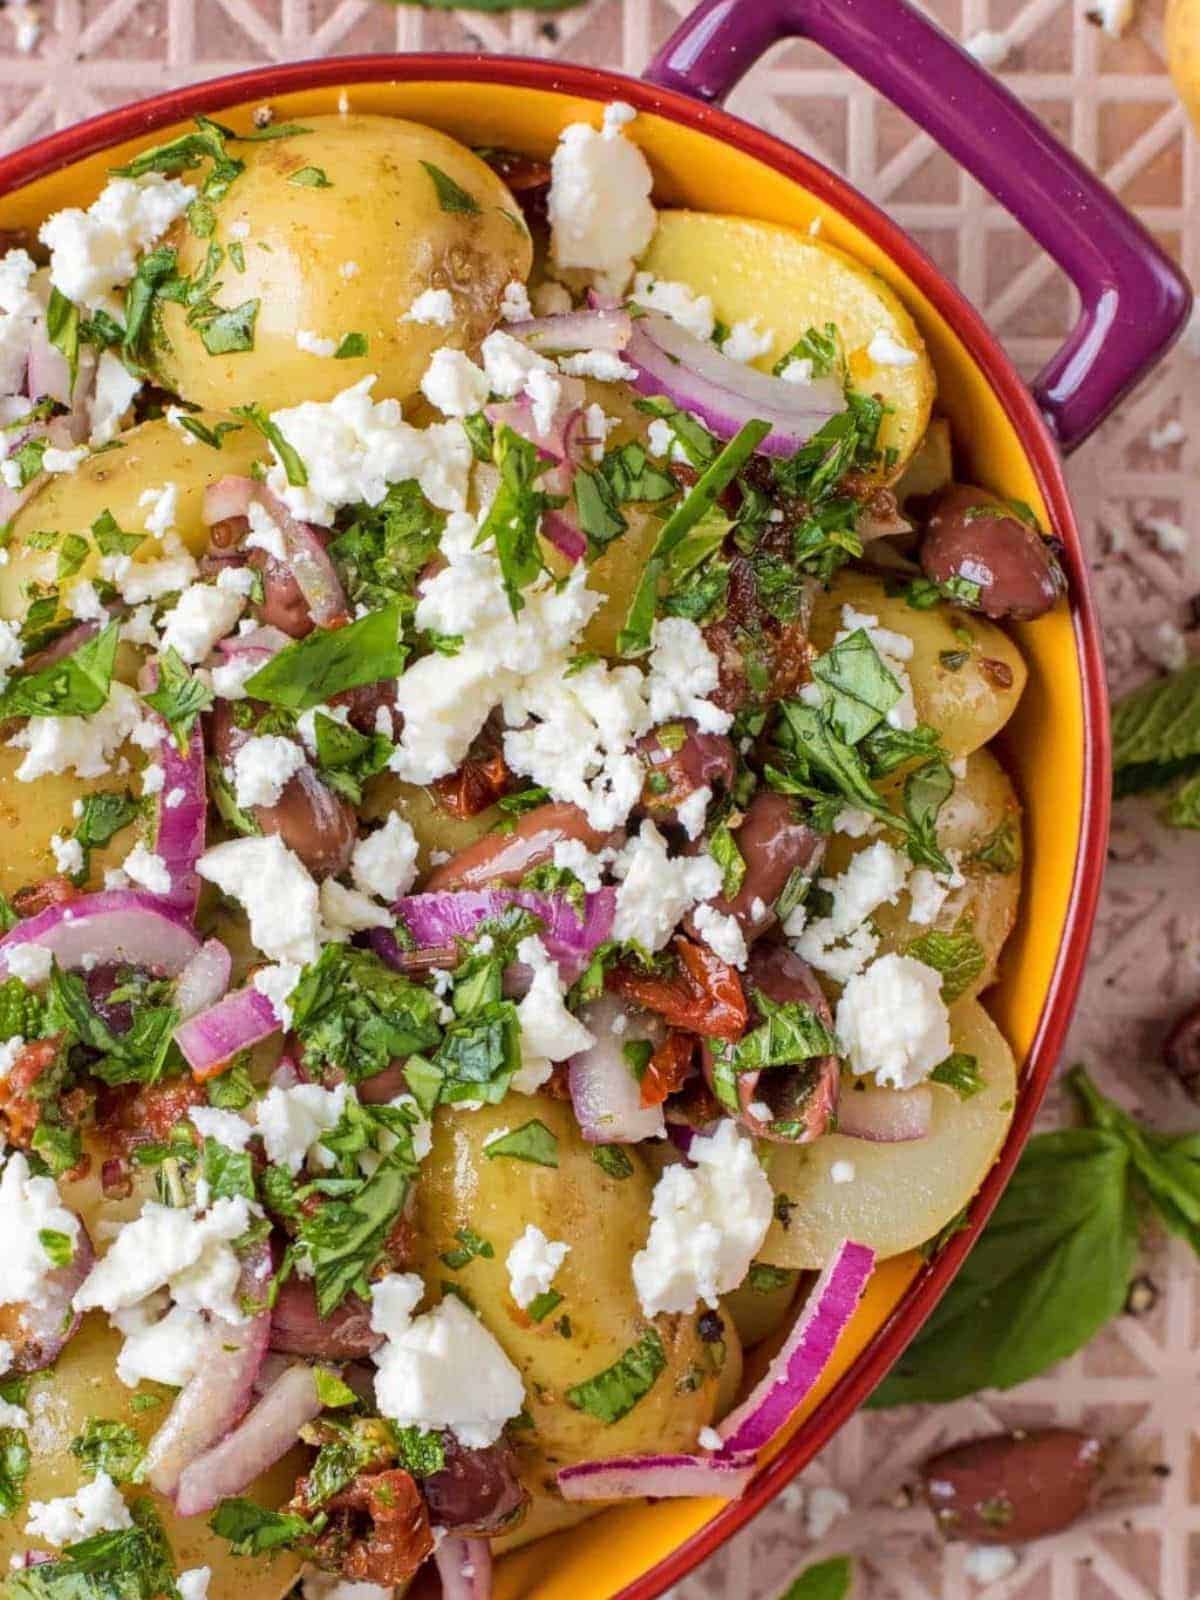 Mediterranean potato salad in a purple and orange casserole dish